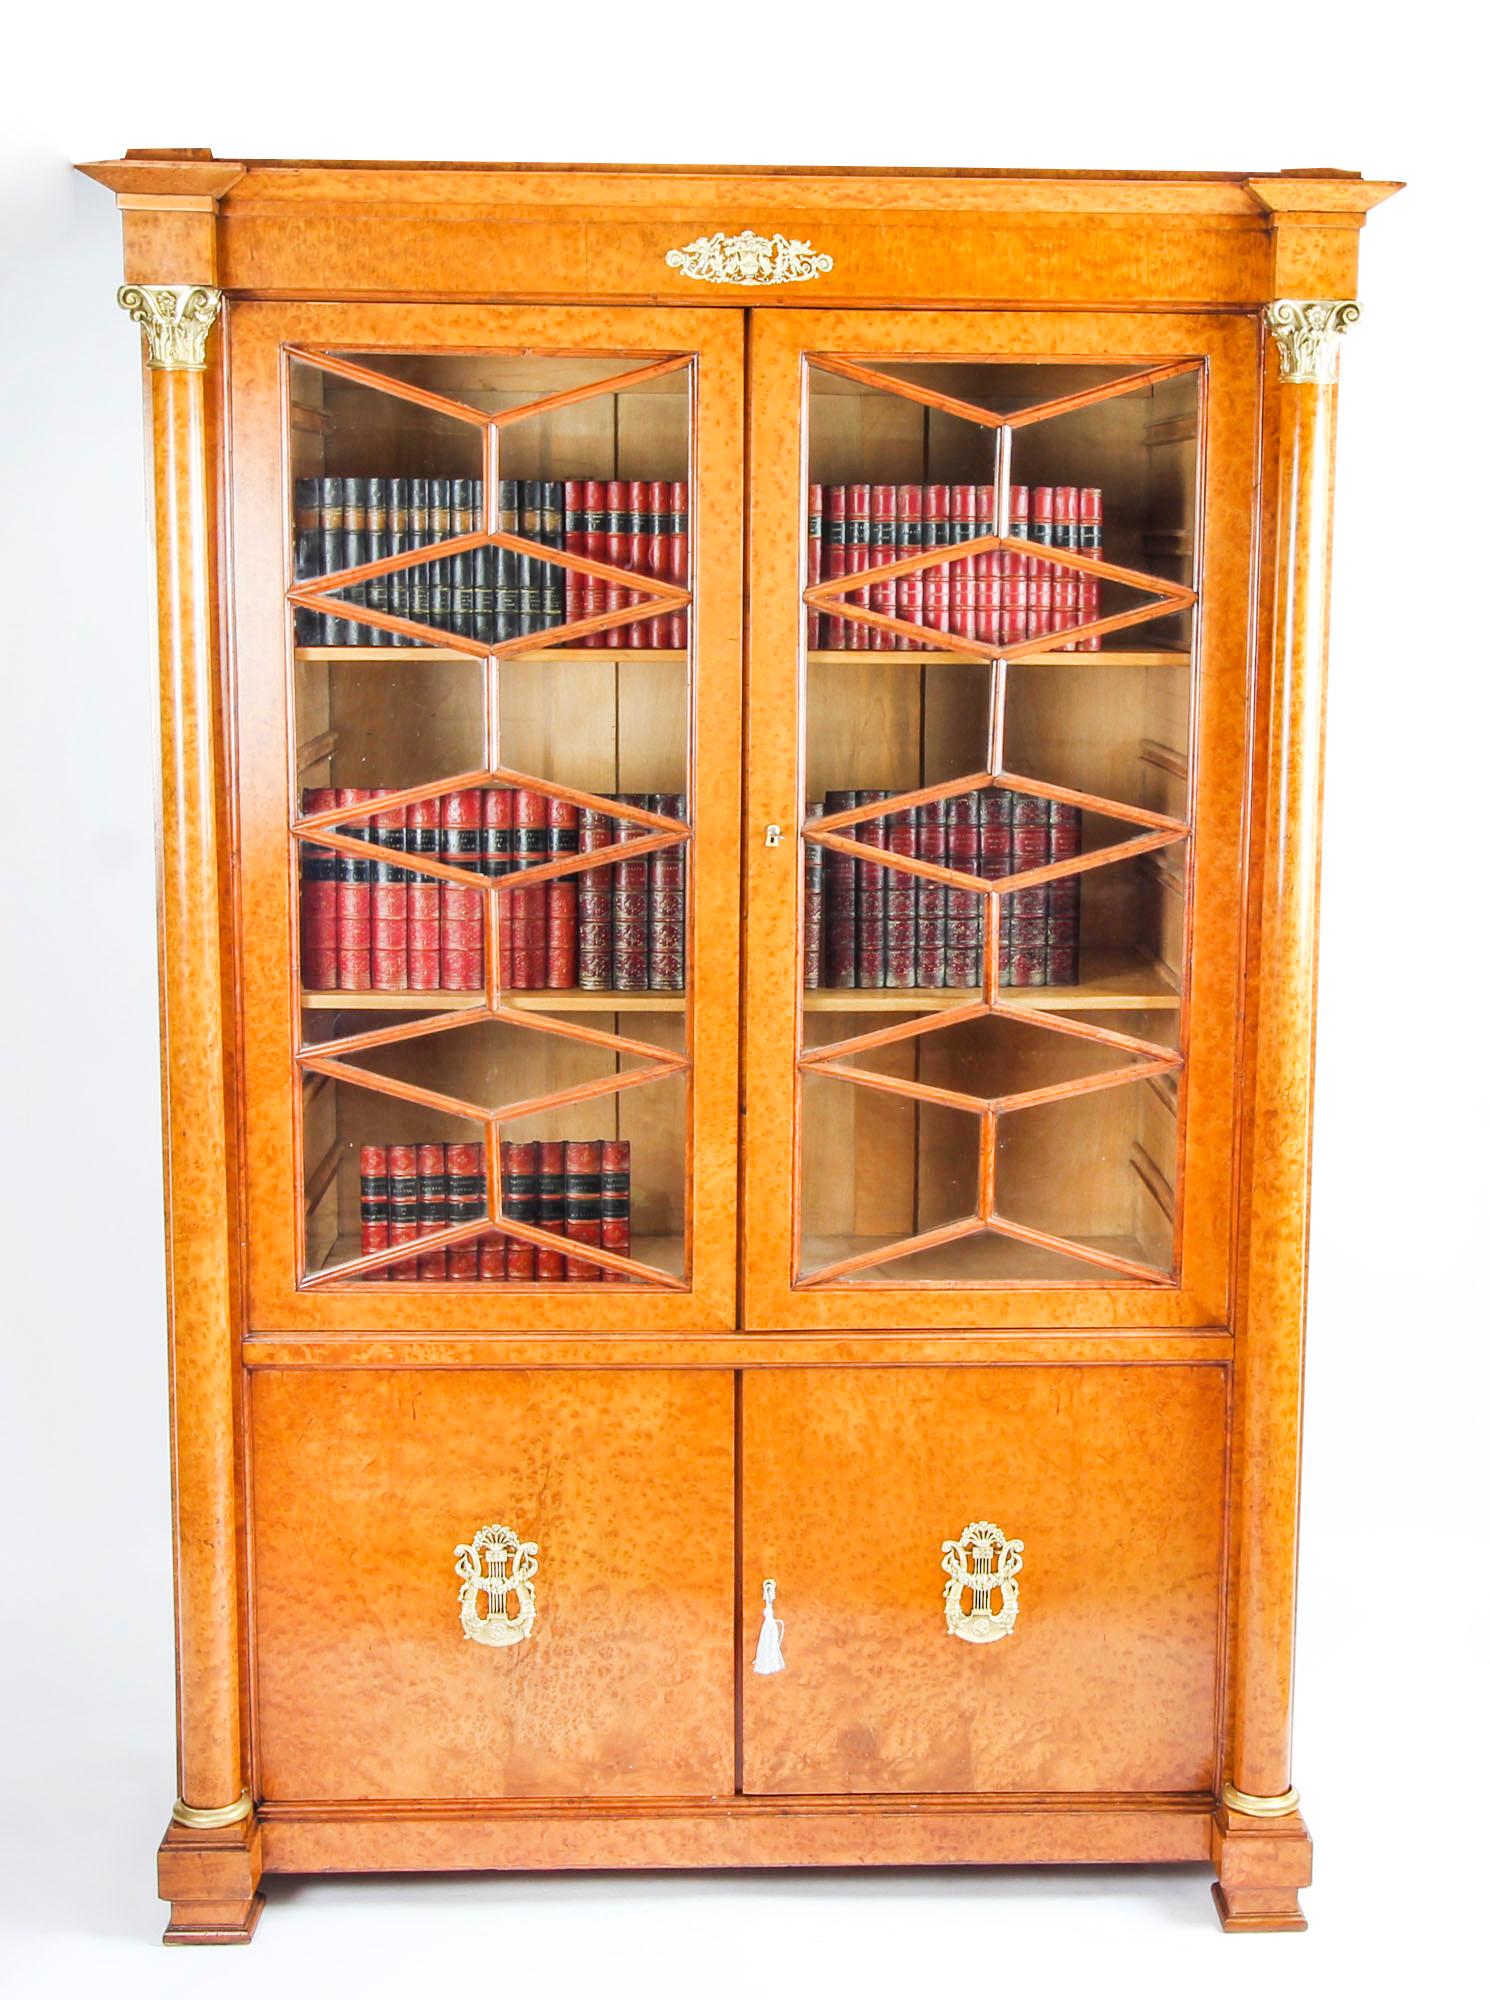 Dies ist eine schöne antike Französisch Charles X Wurzelahorn Bücherregal mit fabelhaften Ormolu Beschläge, um 1820 in Datum.
 
Er wurde aus feinstem Wurzelahorn gefertigt und ist mit fein gegossenen Ormolu-Beschlägen verziert, die für den